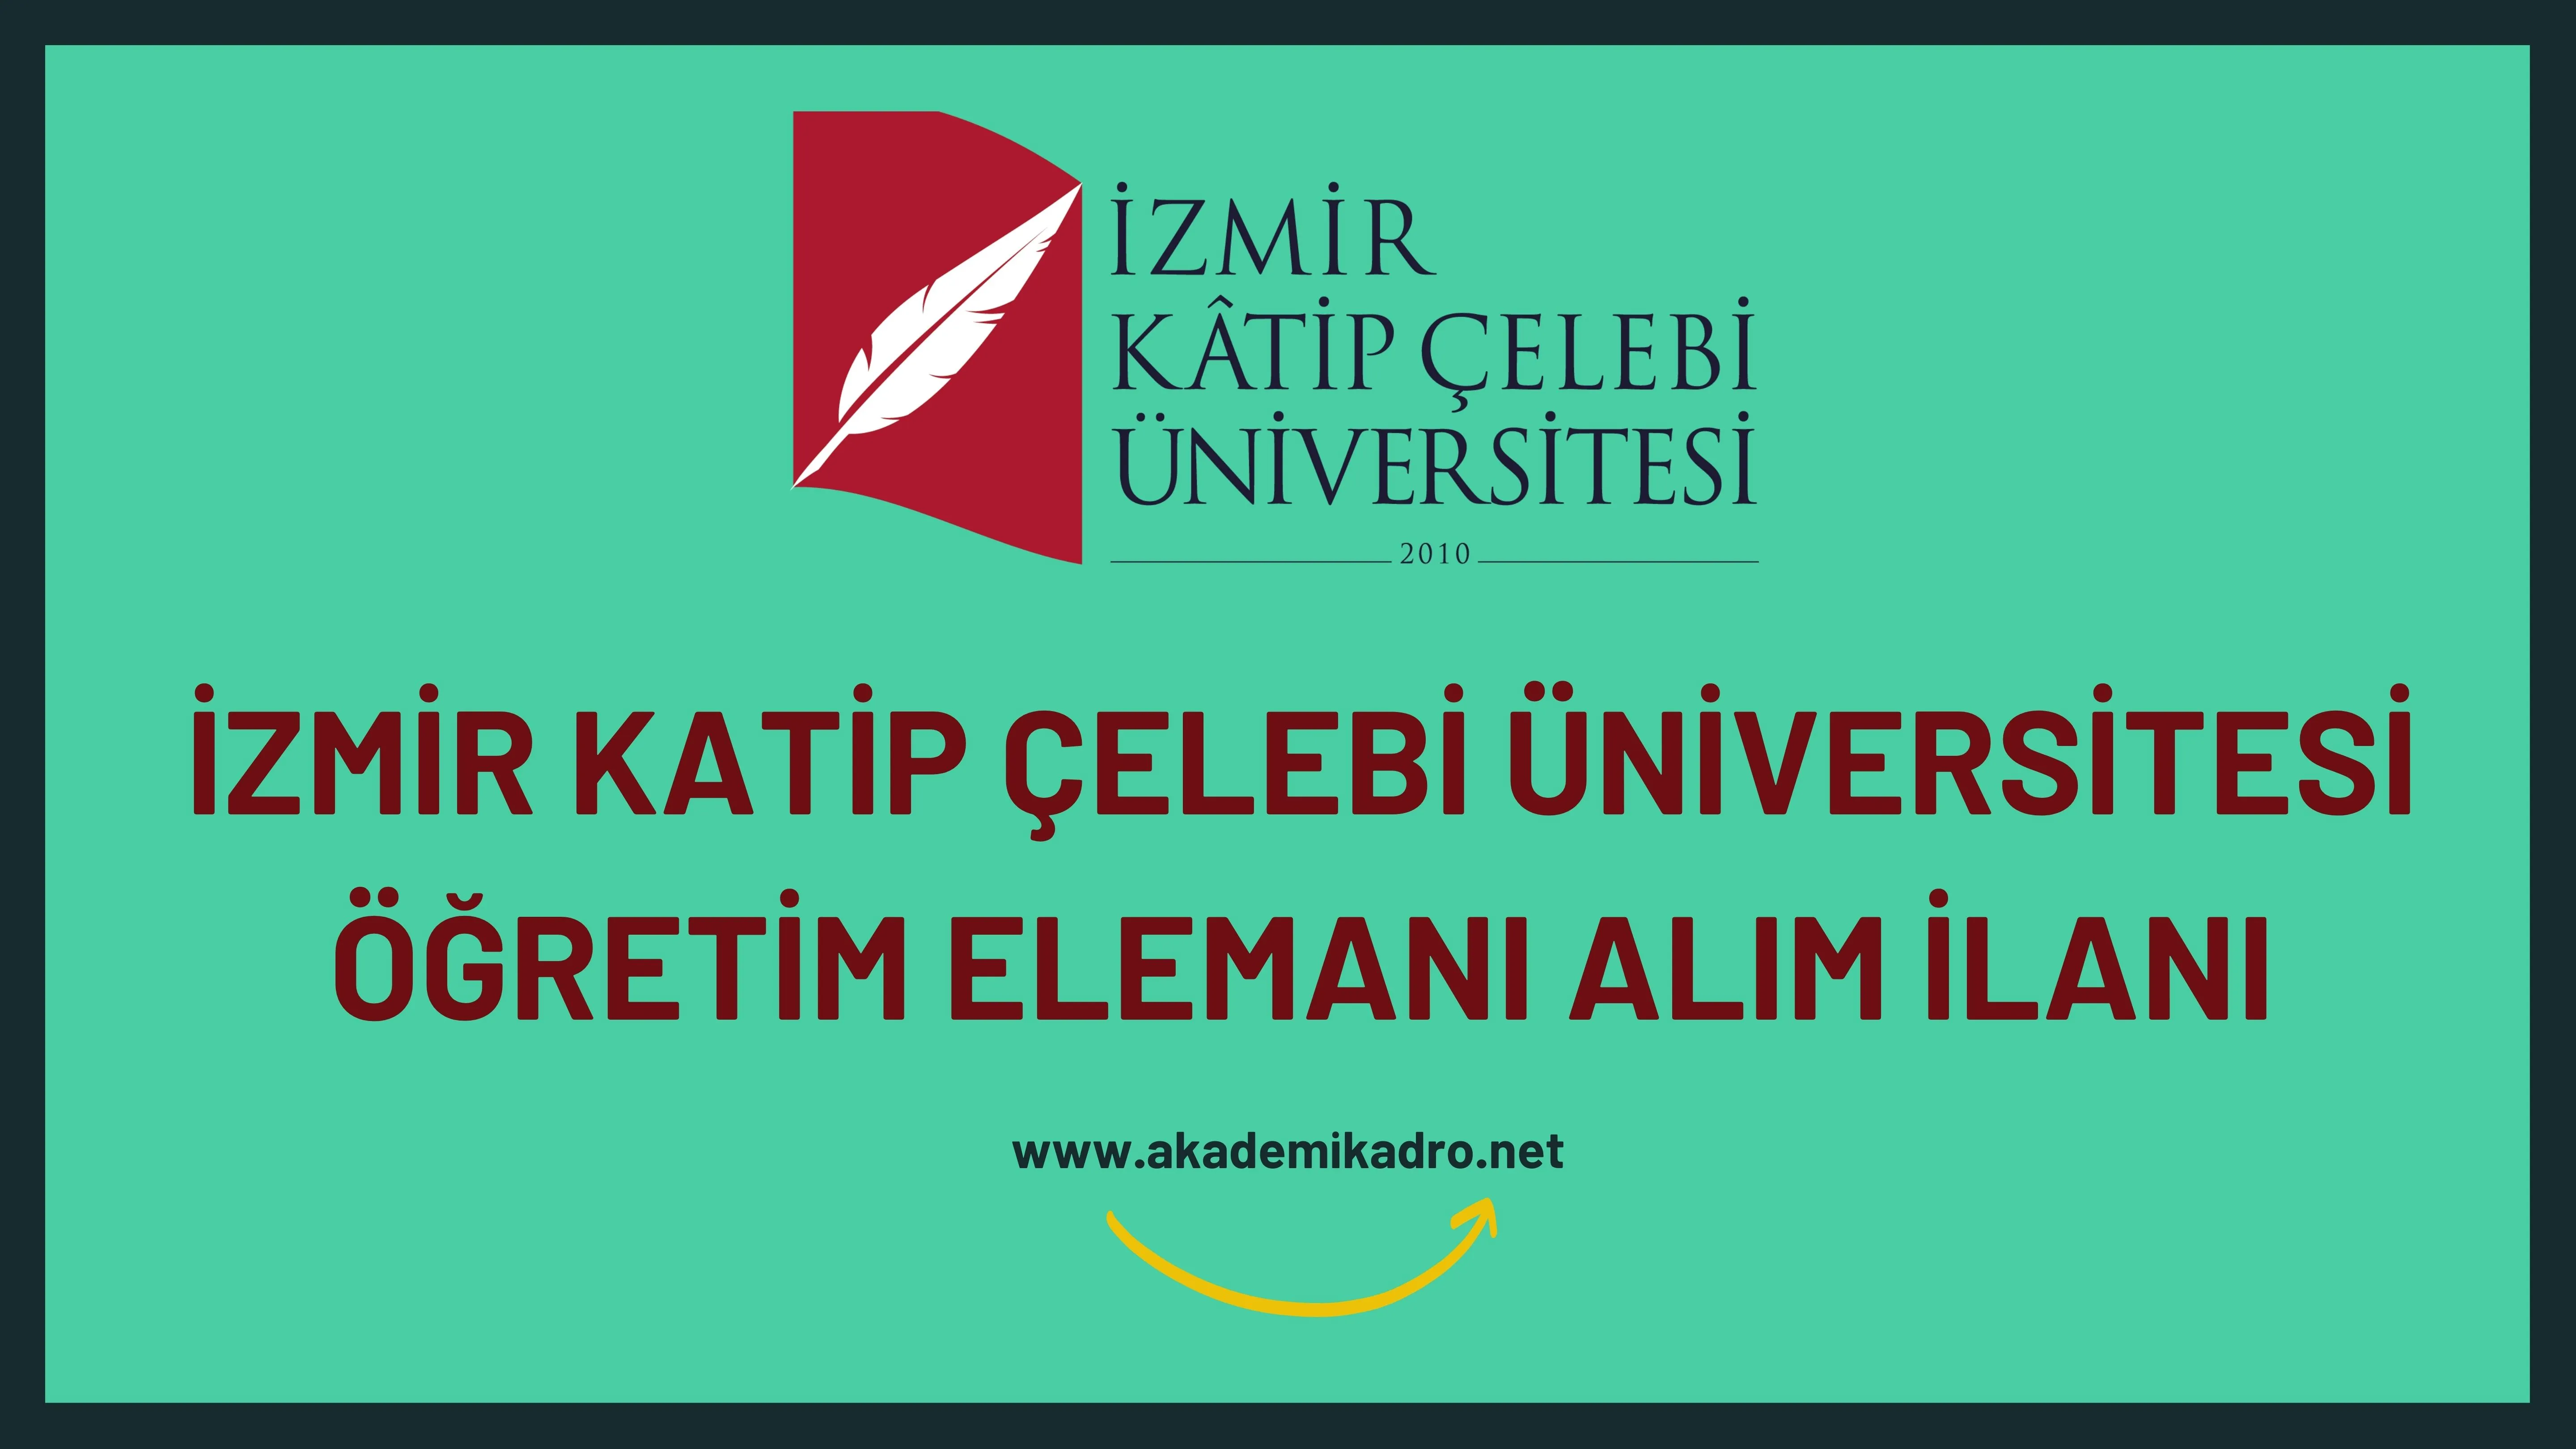 İzmir Katip Çelebi Üniversitesi 7 Araştırma görevlisi ve 4 öğretim görevlisi alacaktır.